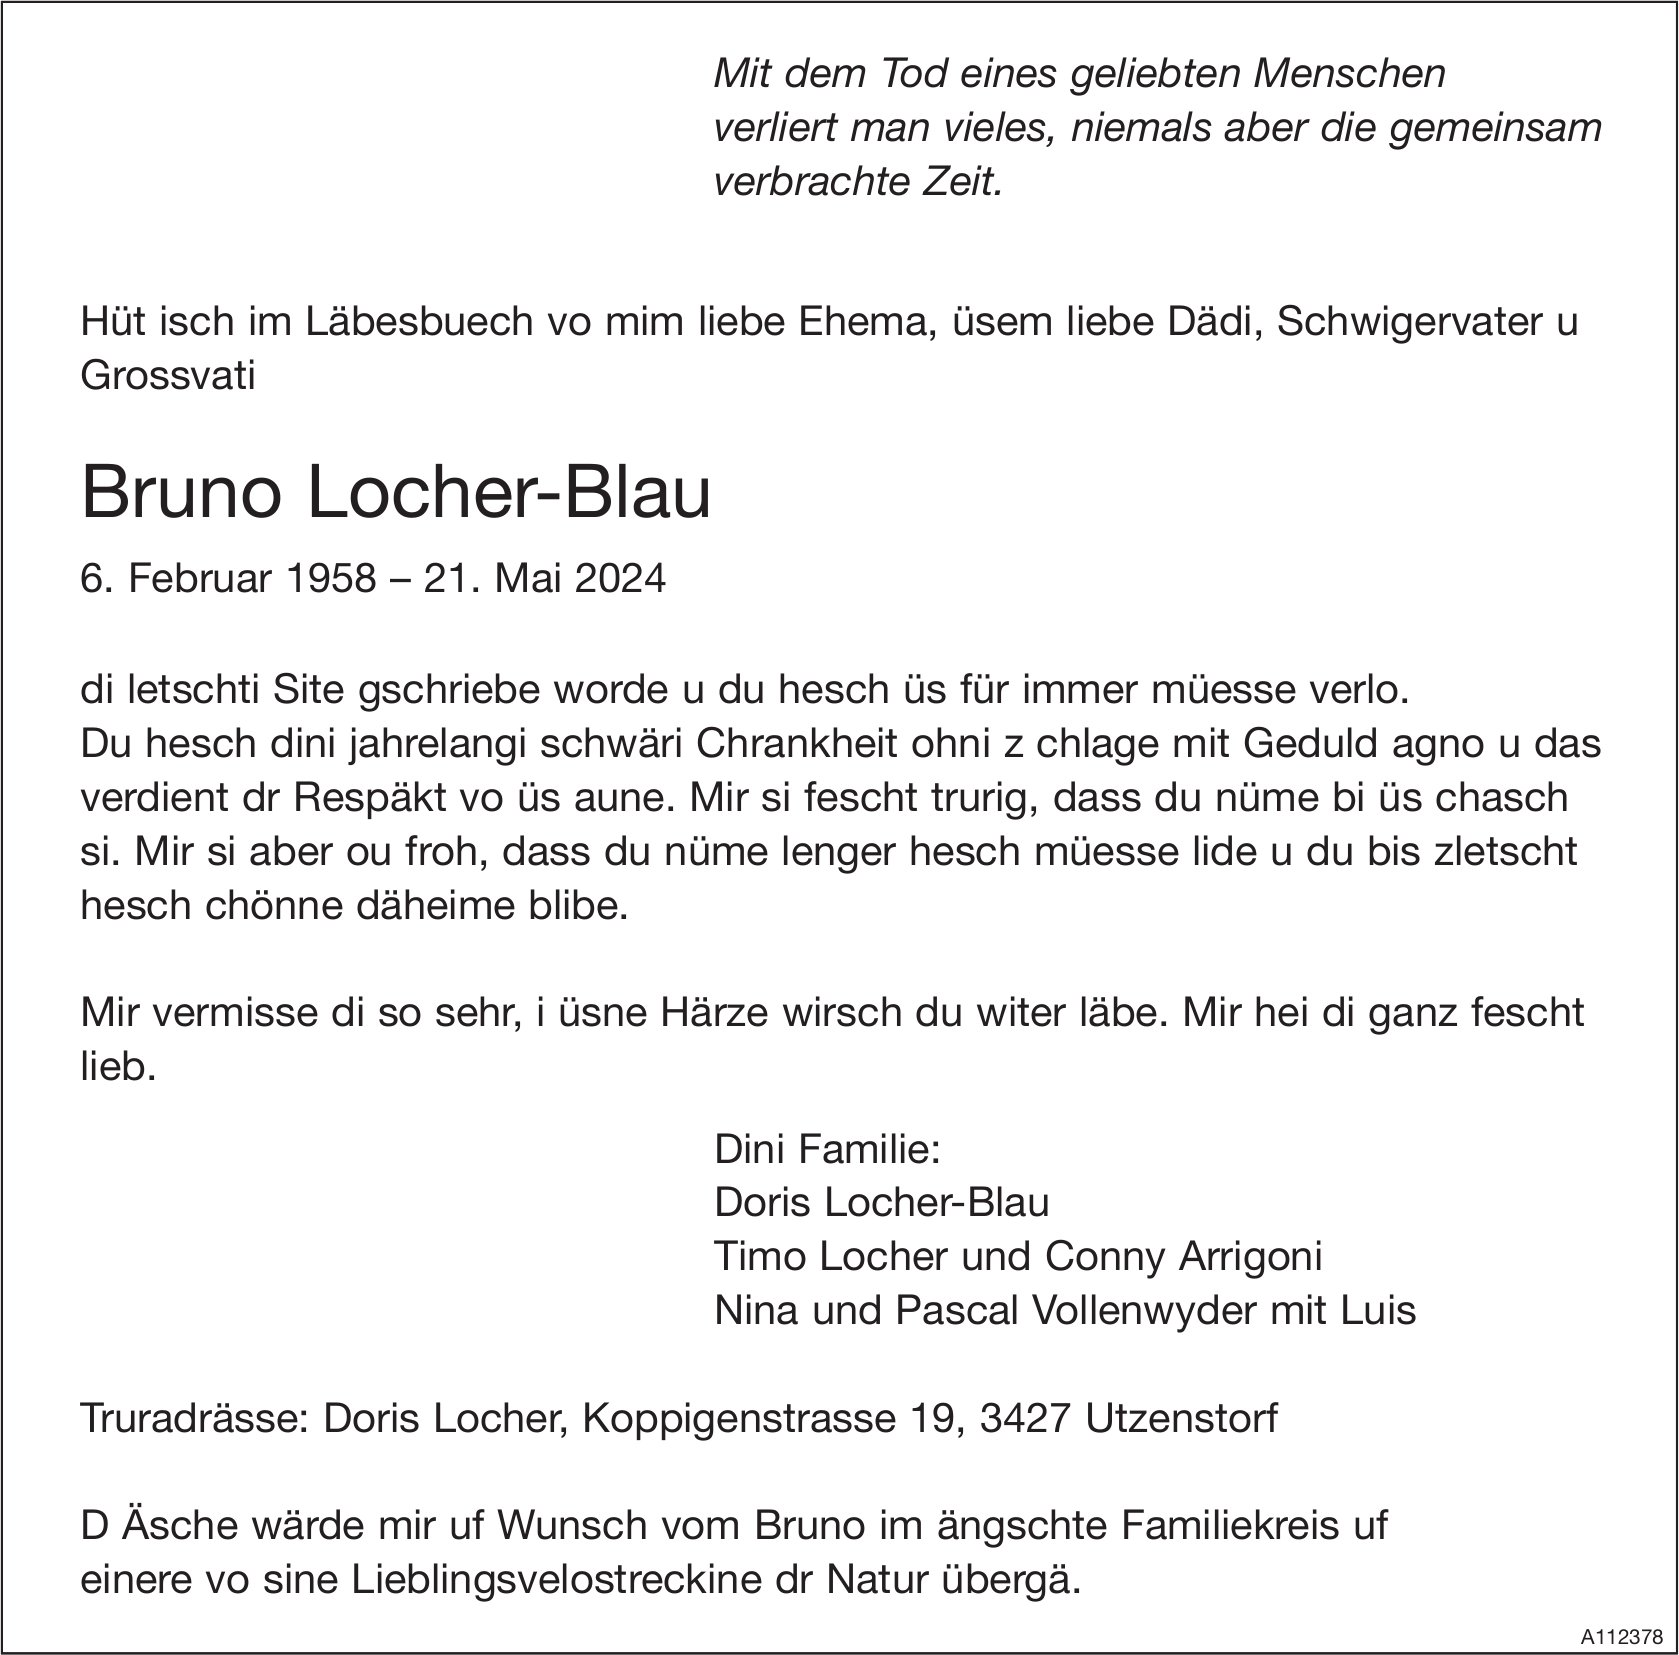 Bruno Locher-Blau, Mai 2024 / TA